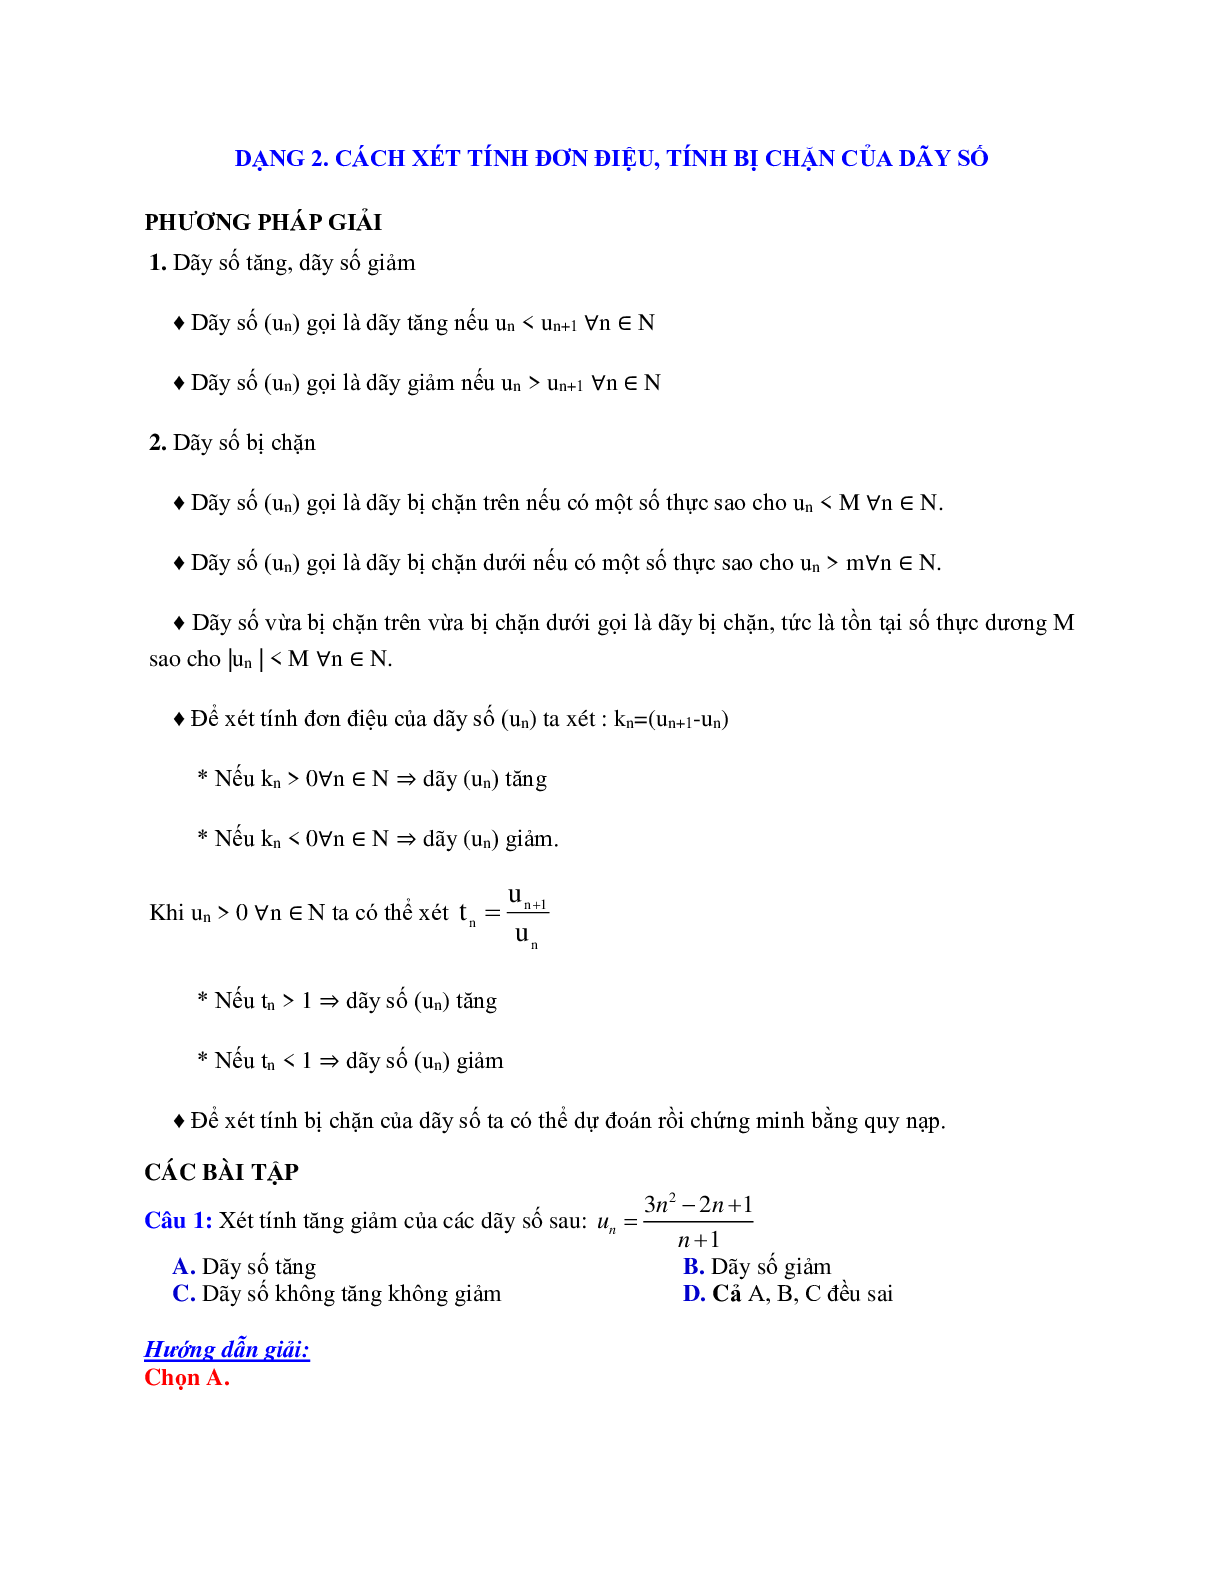 Phương pháp giải và bài tập về Cách xét tính đơn điệu, tính bị chặn của dãy số (trang 1)